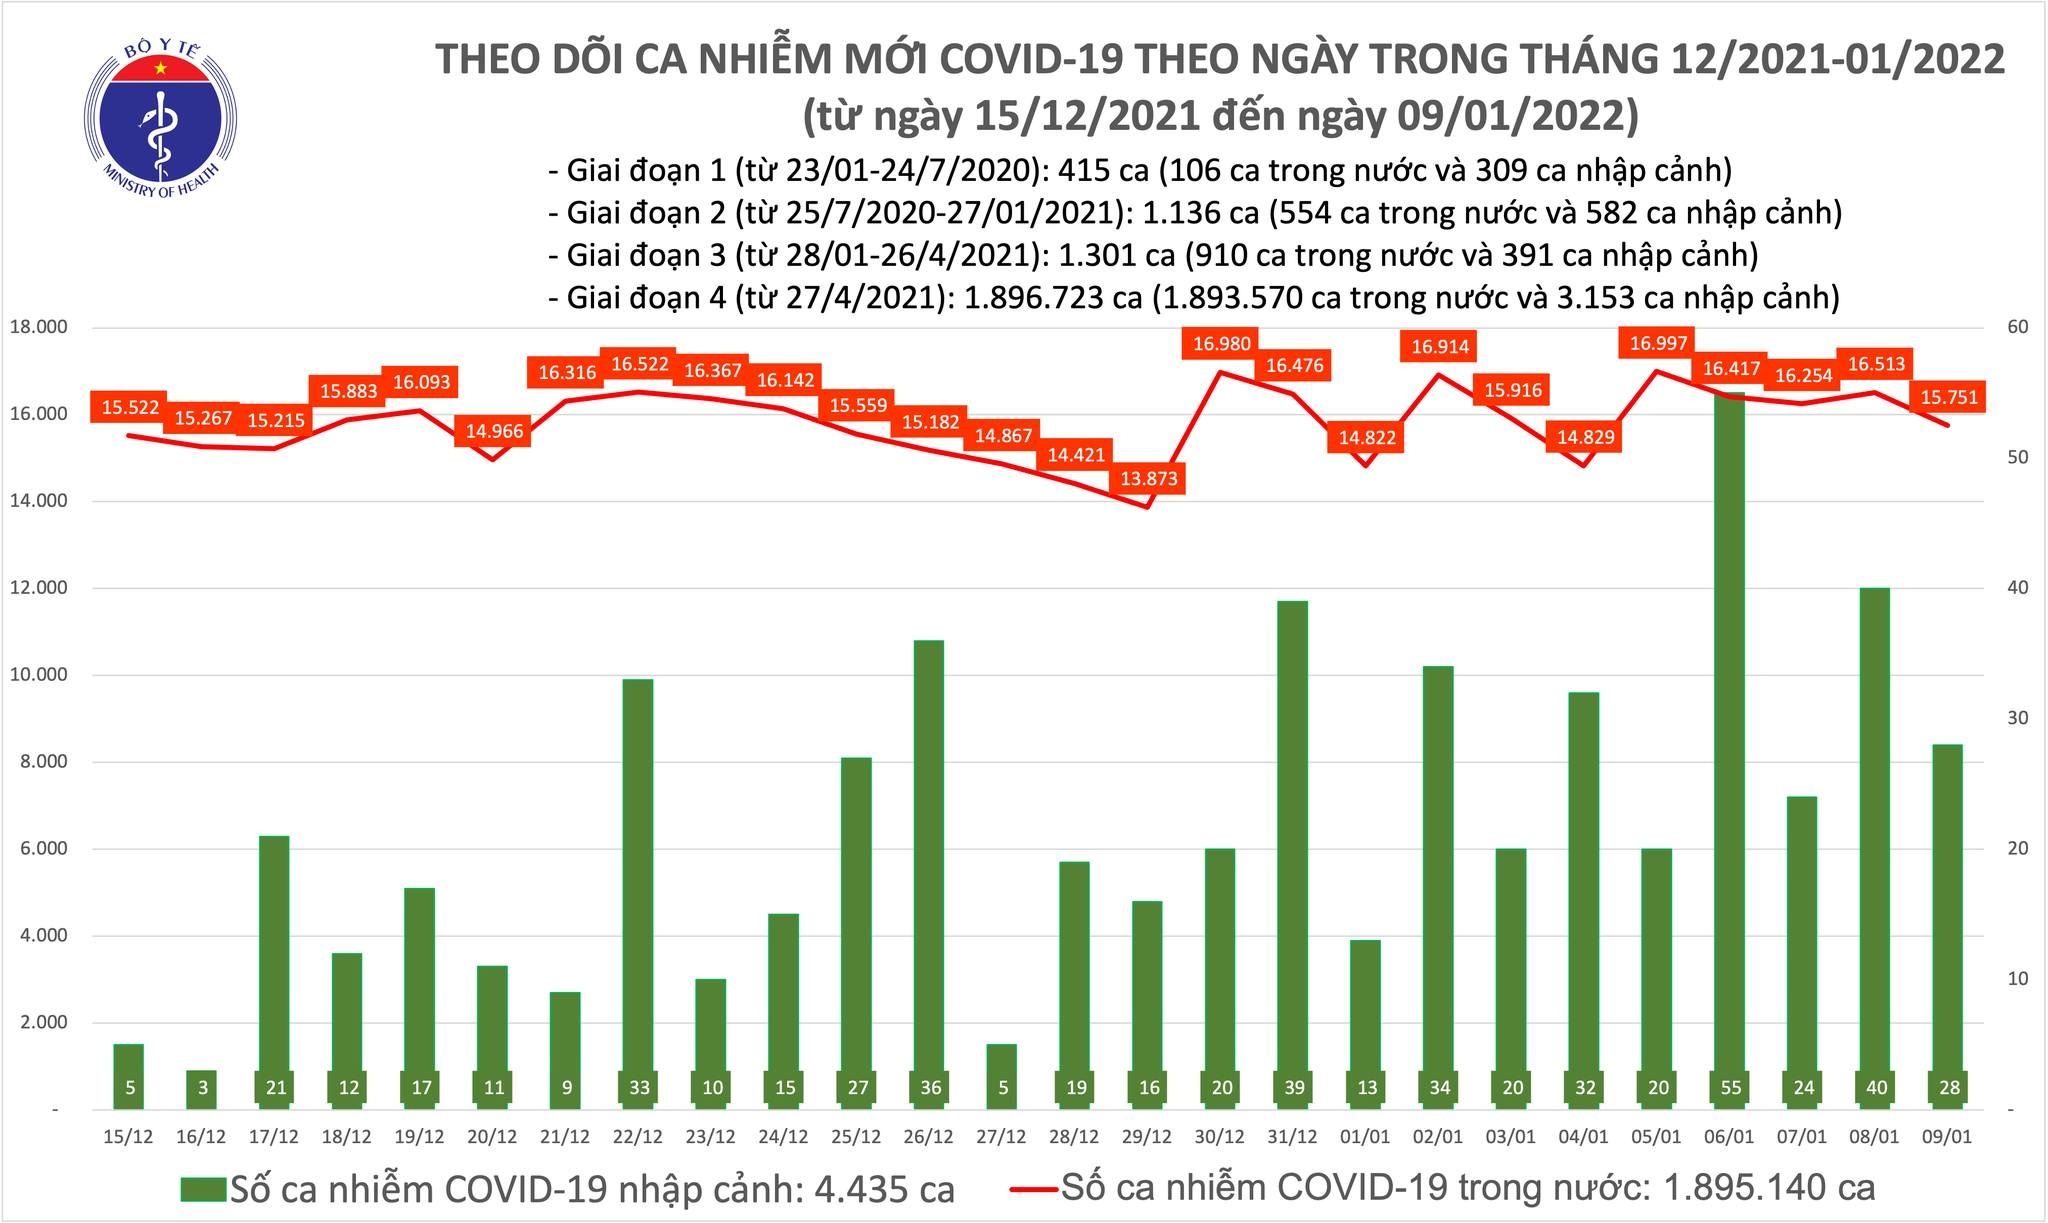 Việt Nam ghi nhận 15.751 ca mắc mới COVID-19 trong ngày 9/1